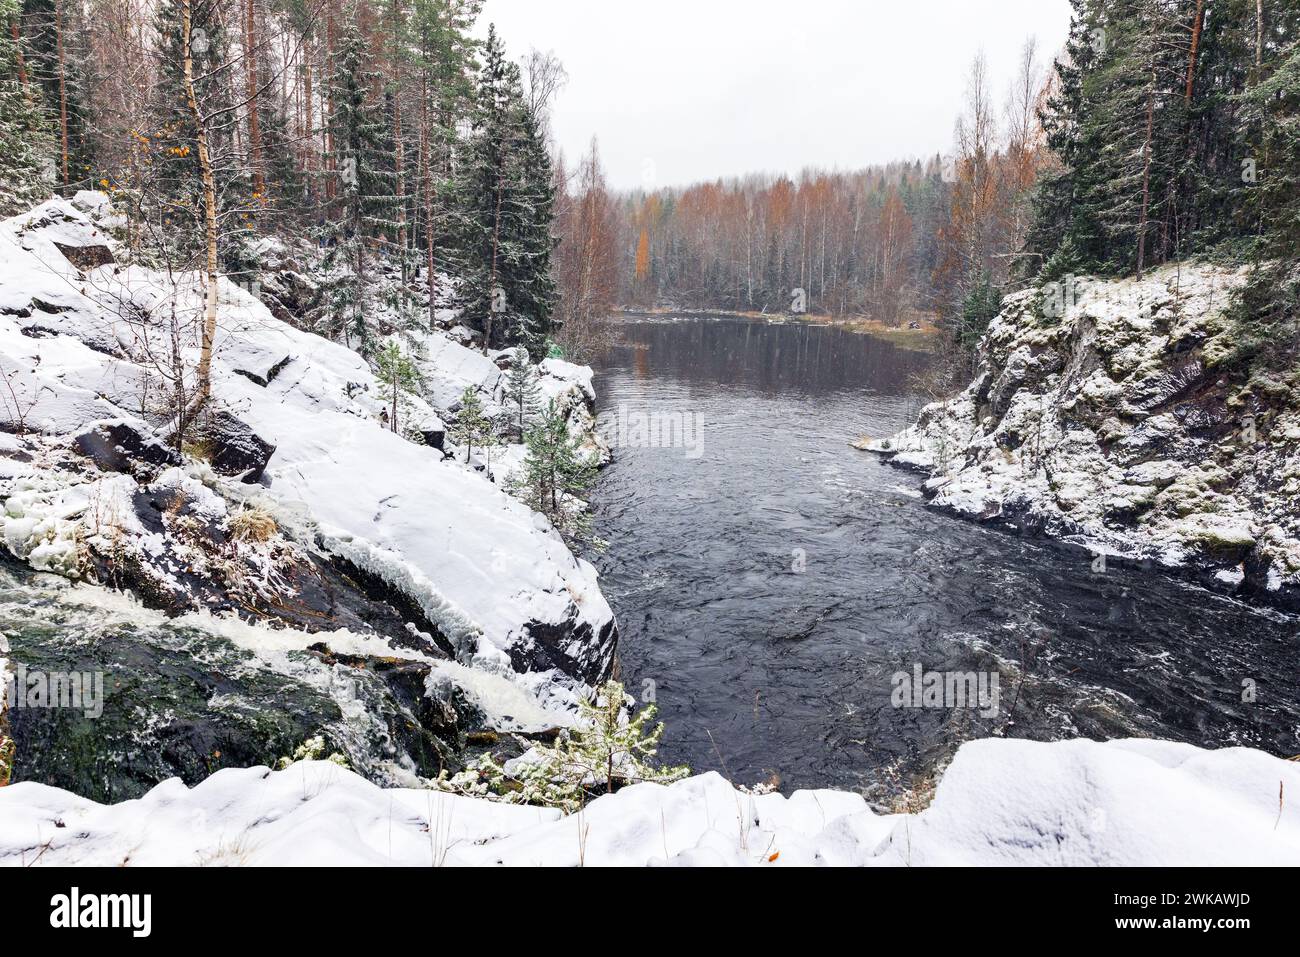 Paysage carélien pris un jour d'hiver froid et enneigé. Rivière Suna, réserve naturelle de Kivach, district de Kondopoga, République de Carélie, Russie Banque D'Images